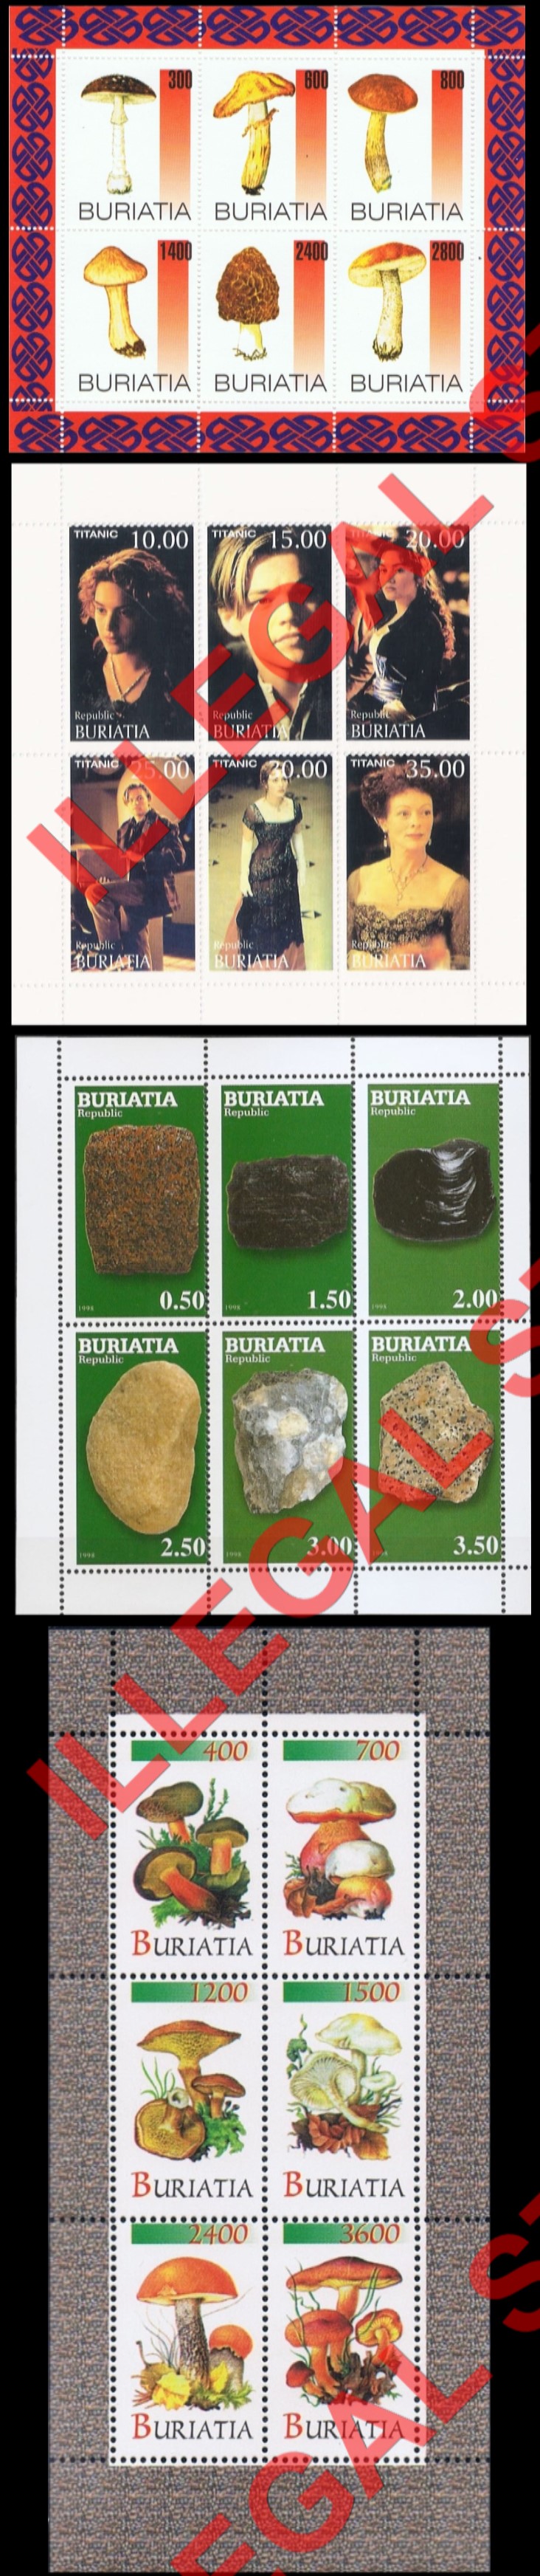 Republic of Buriatia 1998 Illegal Stamps